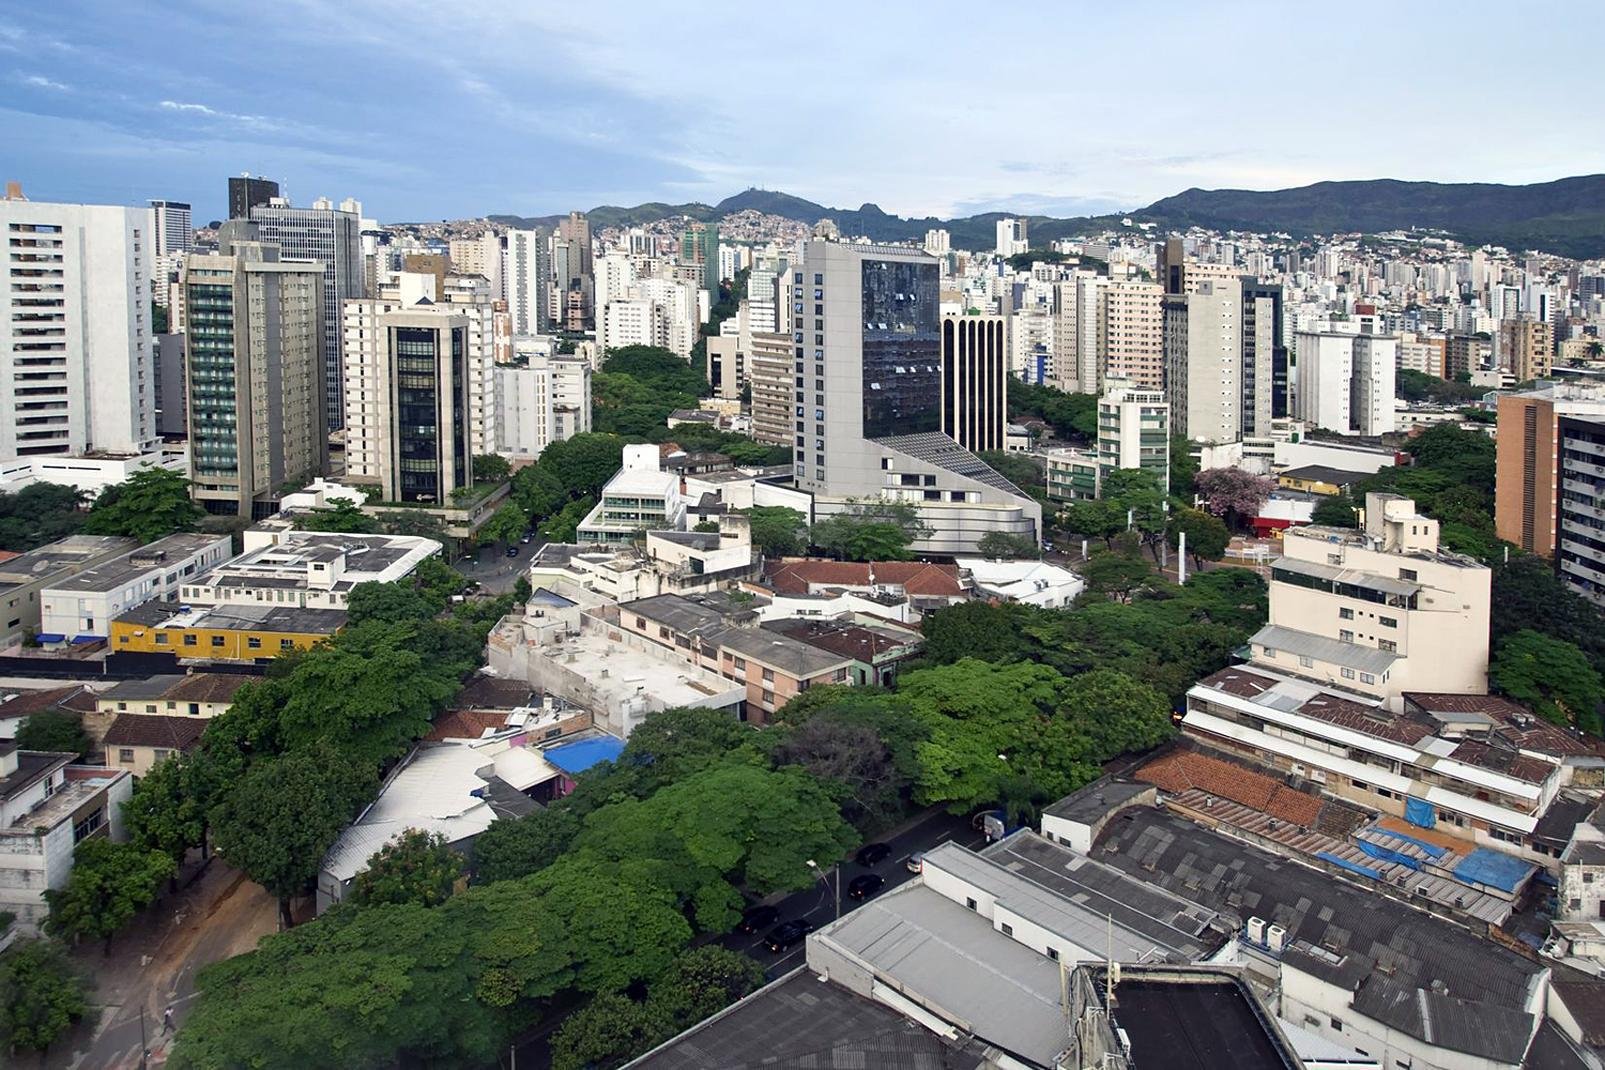 Belo Horizonte est la plus grande ville et la capitale de l'État du Minas Gerais, au sud-est du Brésil. Relativement récente, cette ville moderne créée en 1897 est la ville natale de Dilma Rousseff. La troisième ville du Brésil se trouve dans une région montagneuse au cœur de la zone des mines d'or et des pierres précieuses....